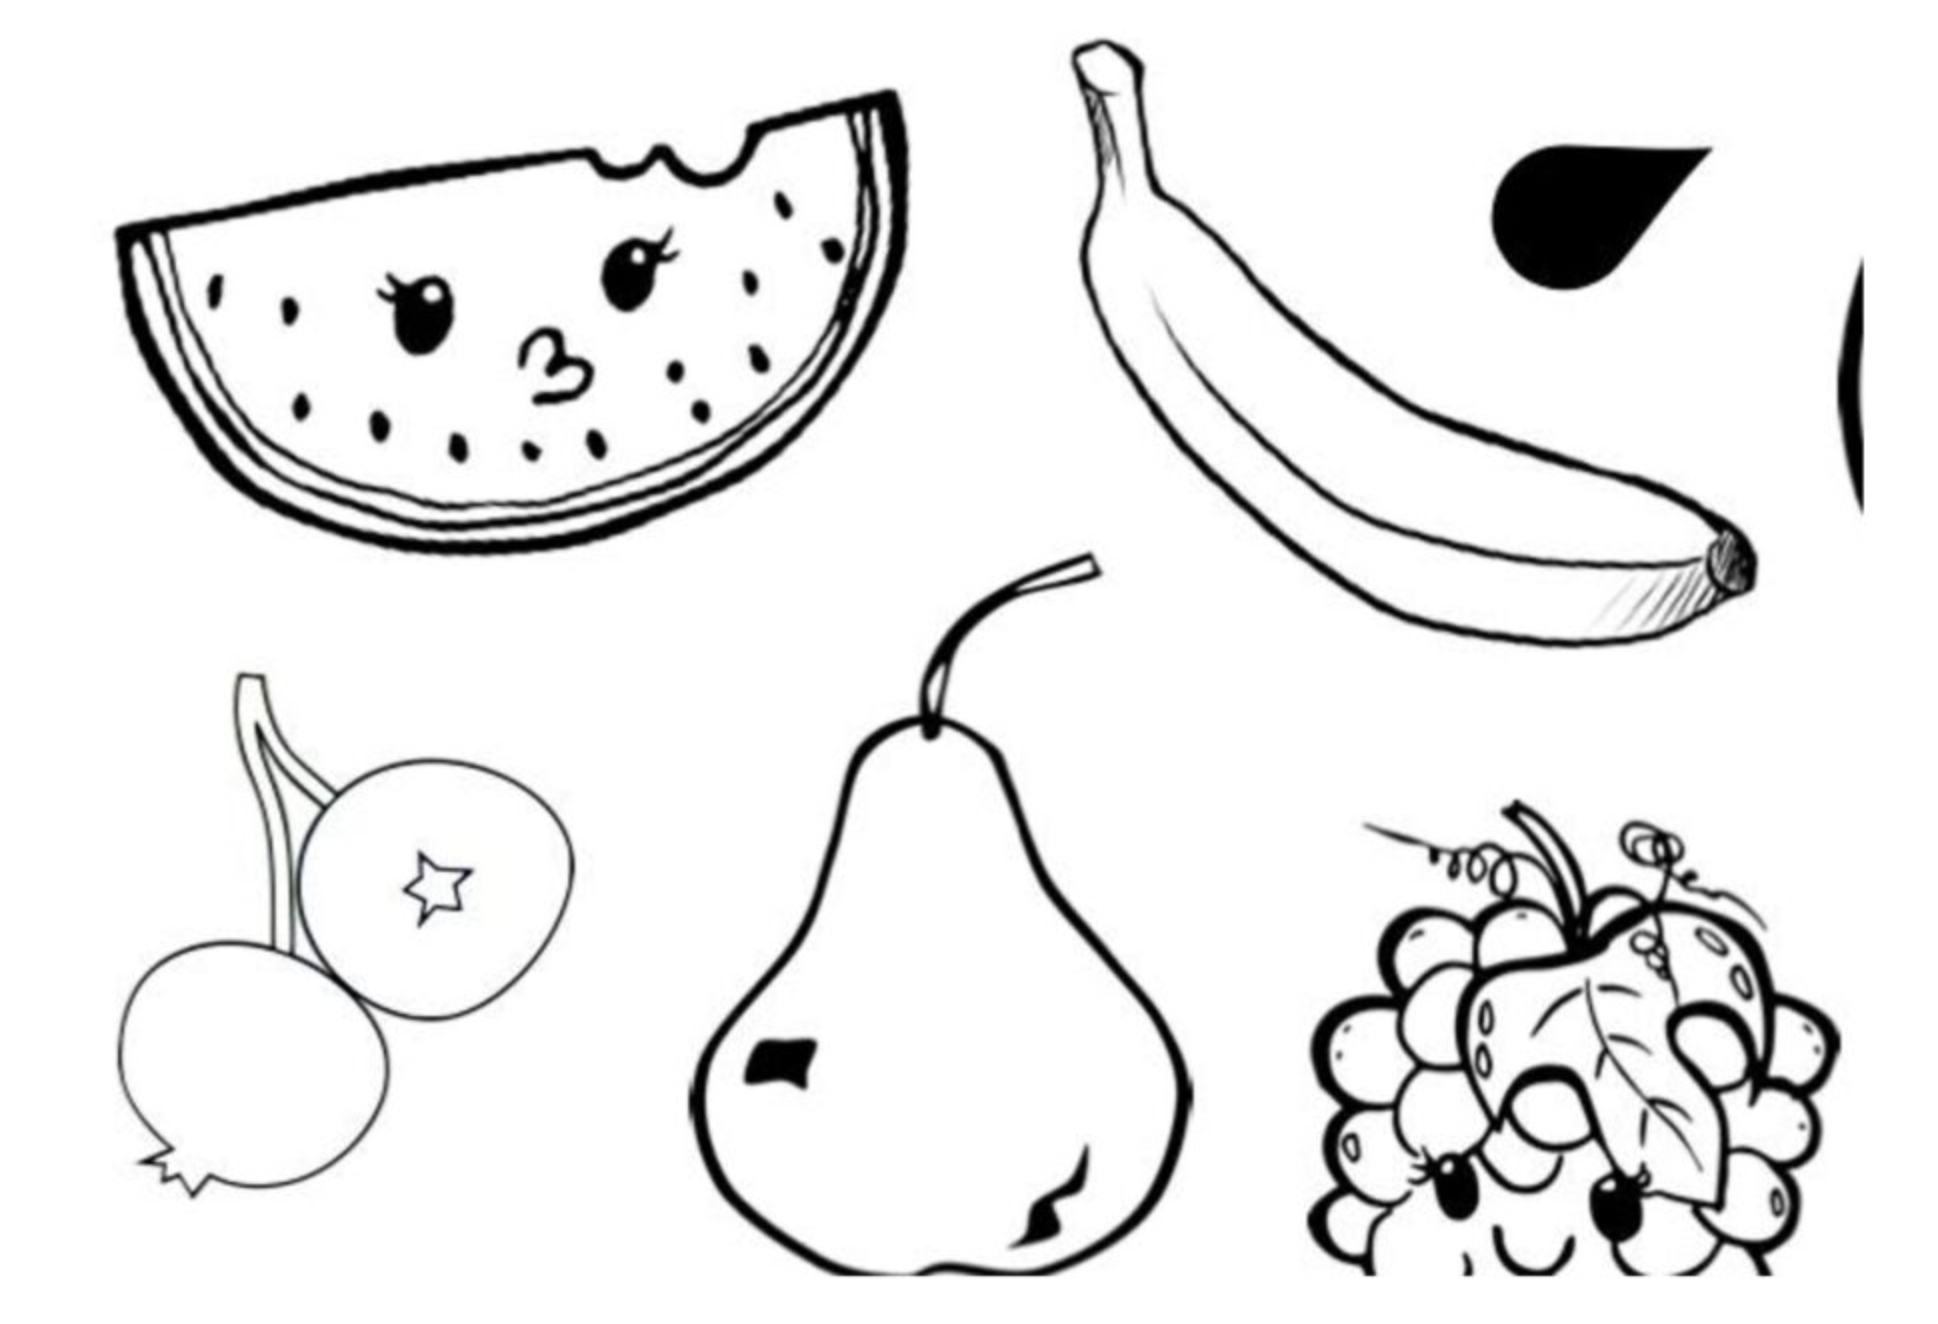 Block poster Fruit - Yoors